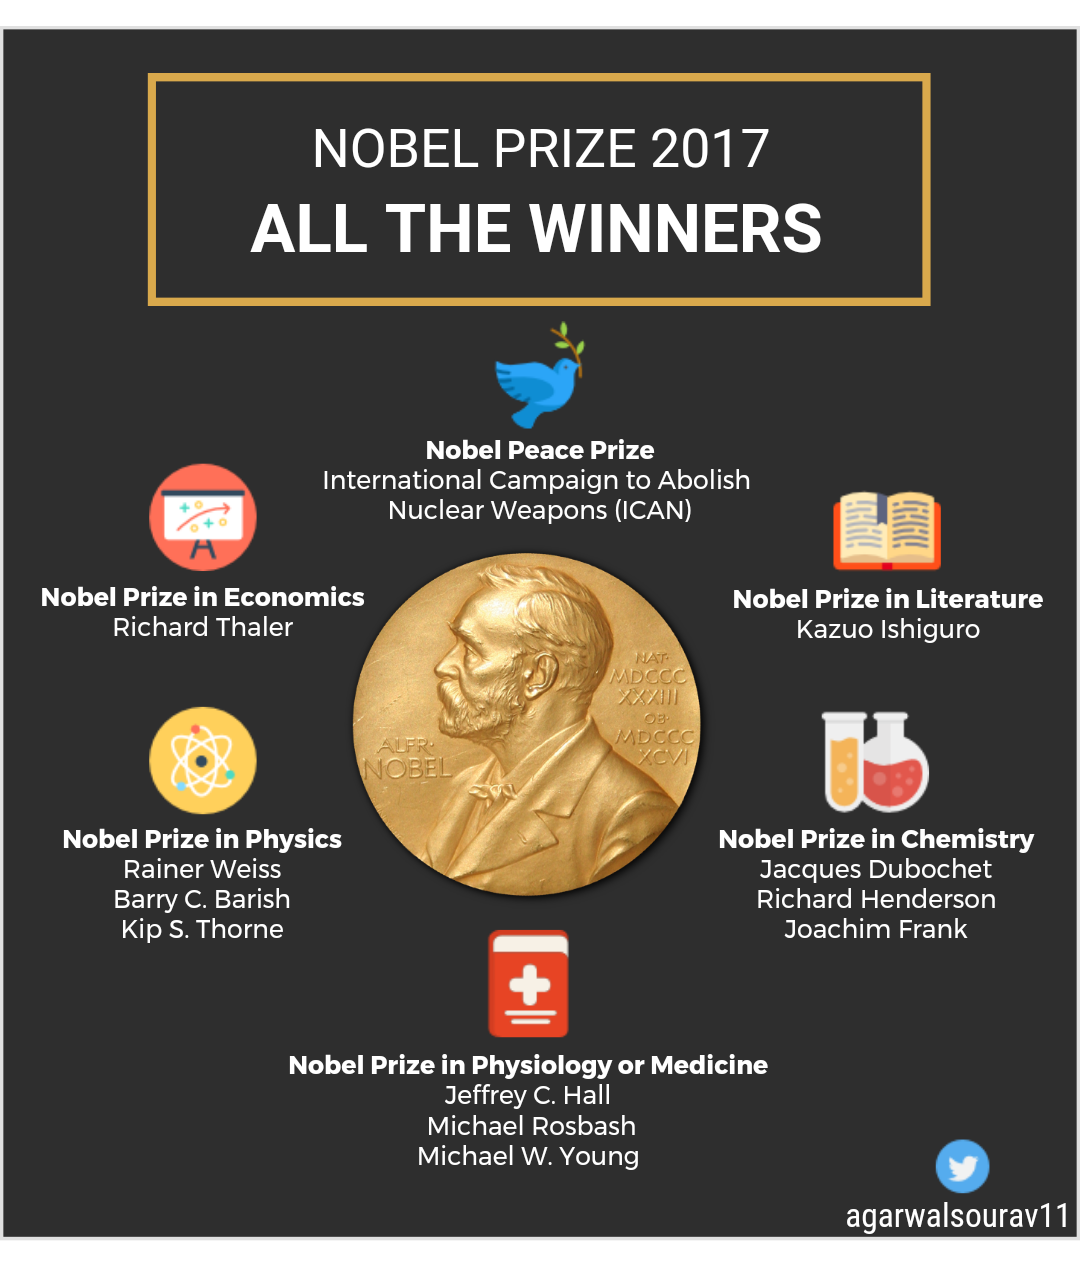 Nobel Prize 2017 Info graph